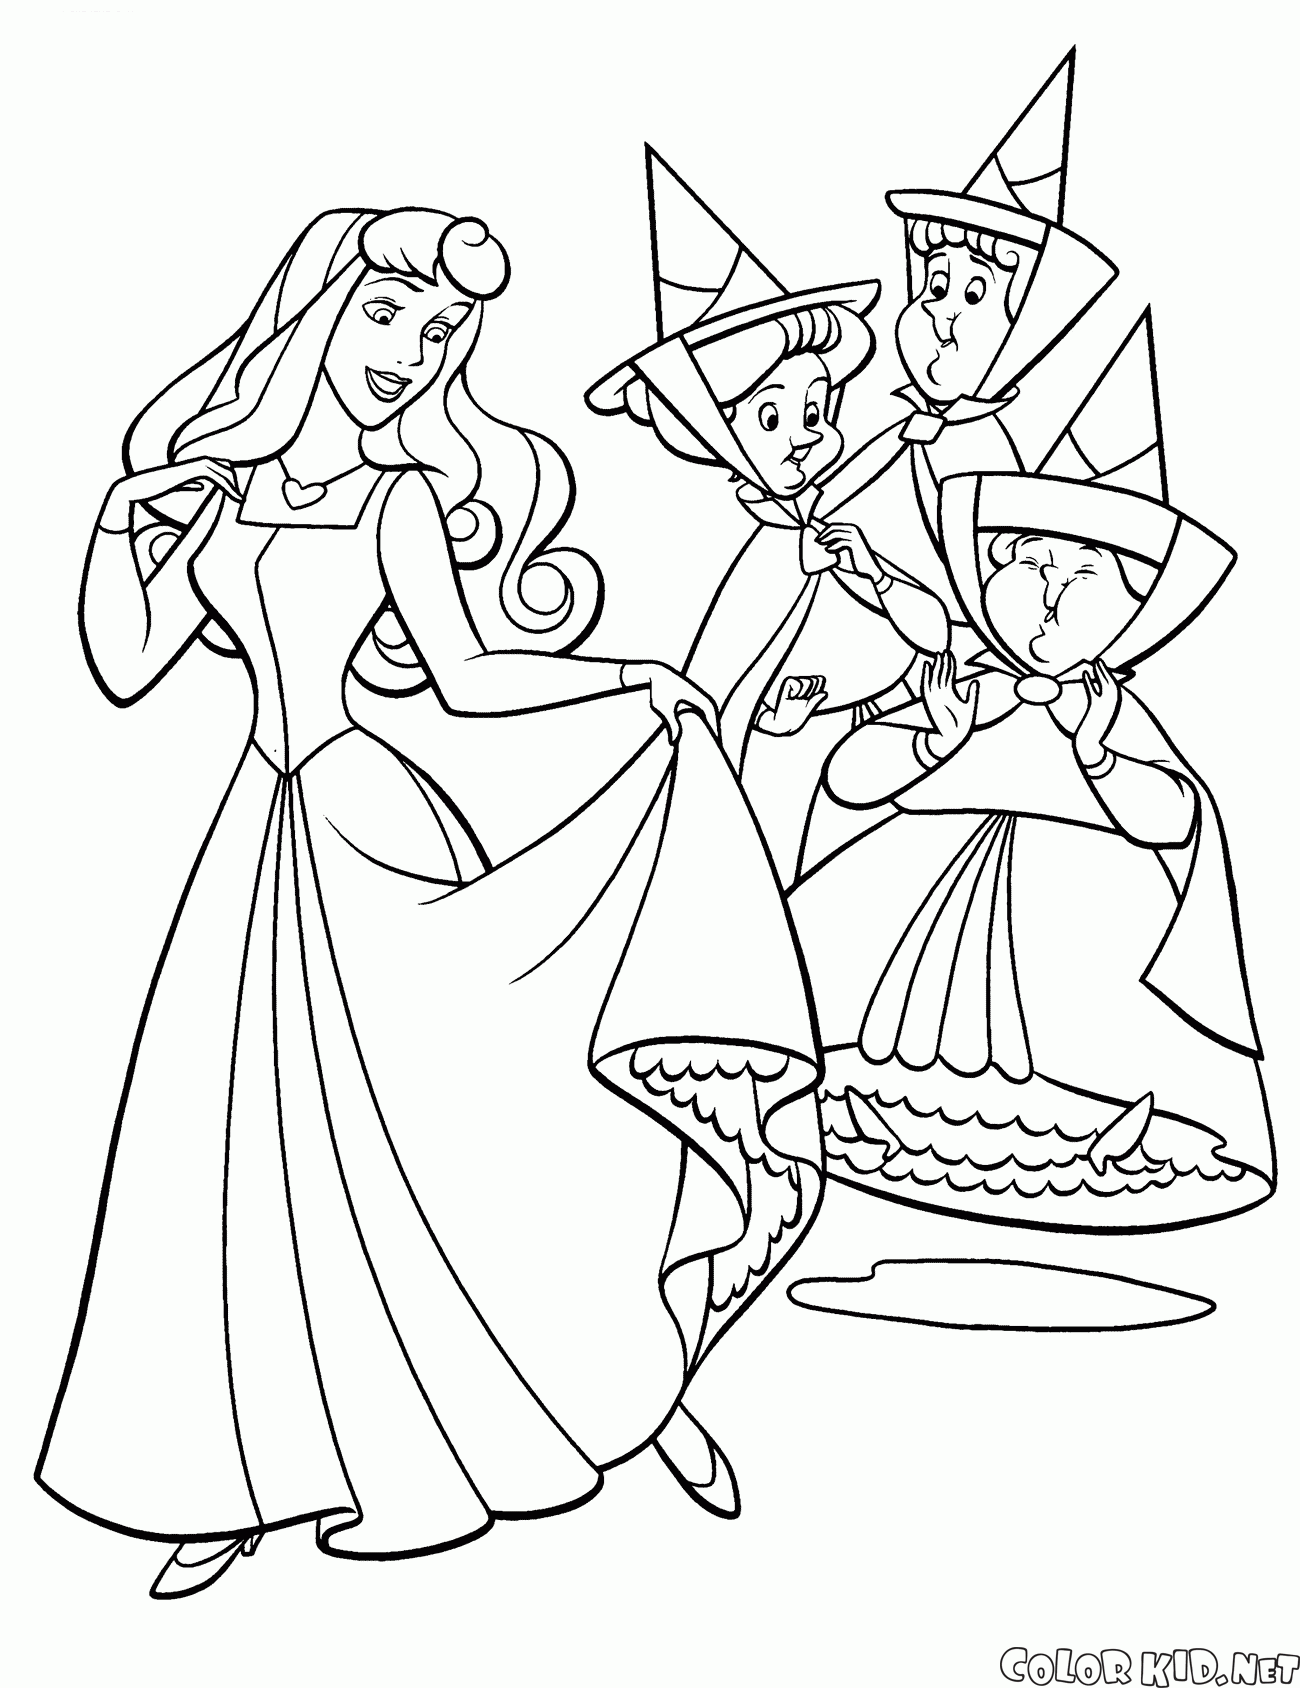 オーロラ姫と妖精